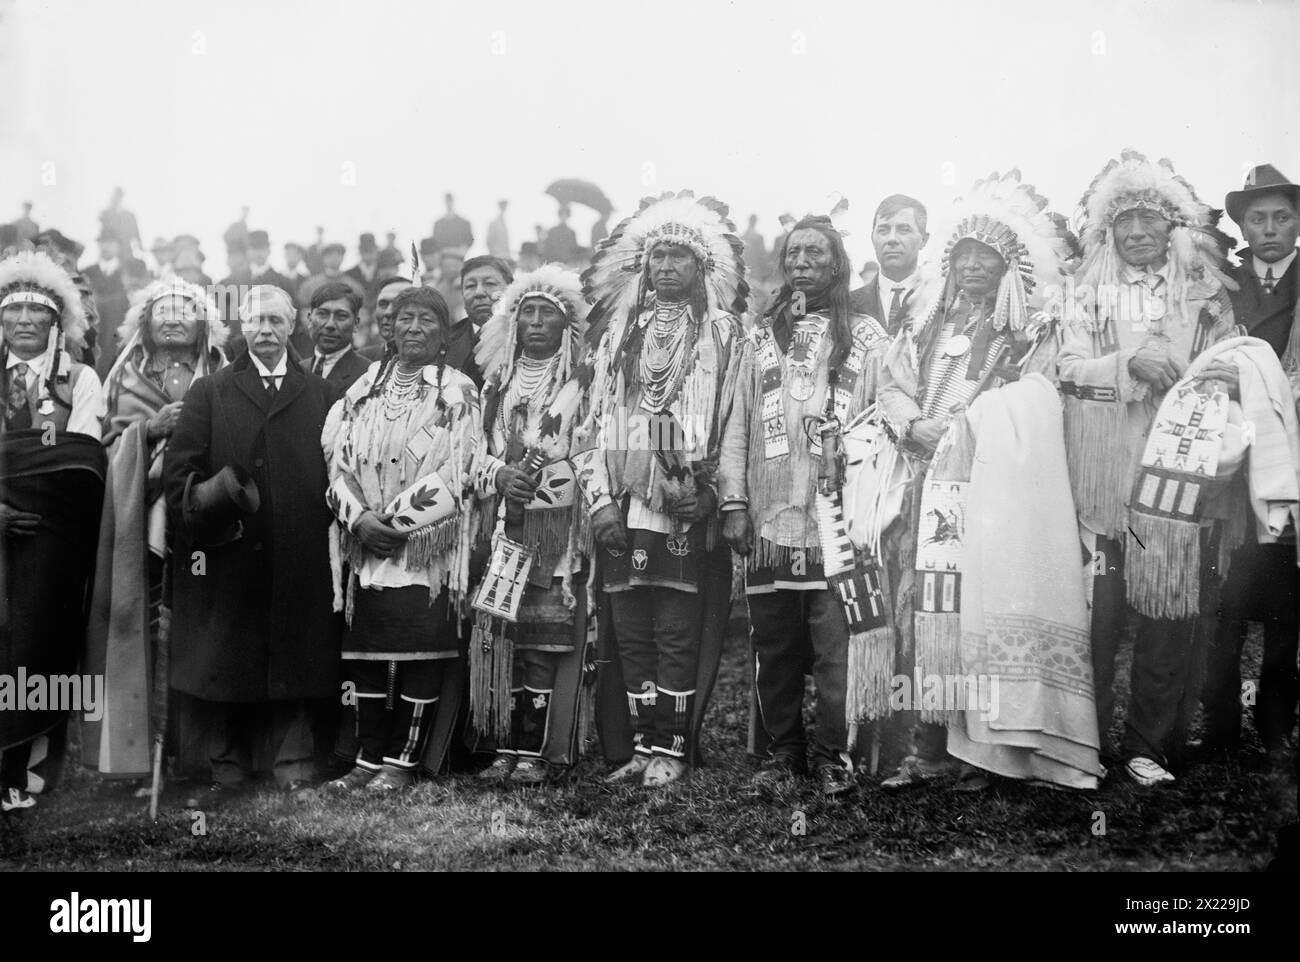 Rodman Wanamaker et les chefs indiens, 1913. Montre des chefs amérindiens avec Rodman Wanamaker (1863-1928) lors de la cérémonie d'inauguration du National American Indian Memorial (qui n'a jamais été construit), Fort Wadsworth, Staten Island, New York. (De gauche à droite) Chef Cheyenne Wooden Leg, Chef Cheyenne Two Lunes, Rodman Wanamaker, Chef Crow Plenty coups, Chef Crow Medicine Crow, Crow Indian White Man Runs Him, et le Chef Oglala Sioux Jack Red Cloud (1862-1928). Banque D'Images